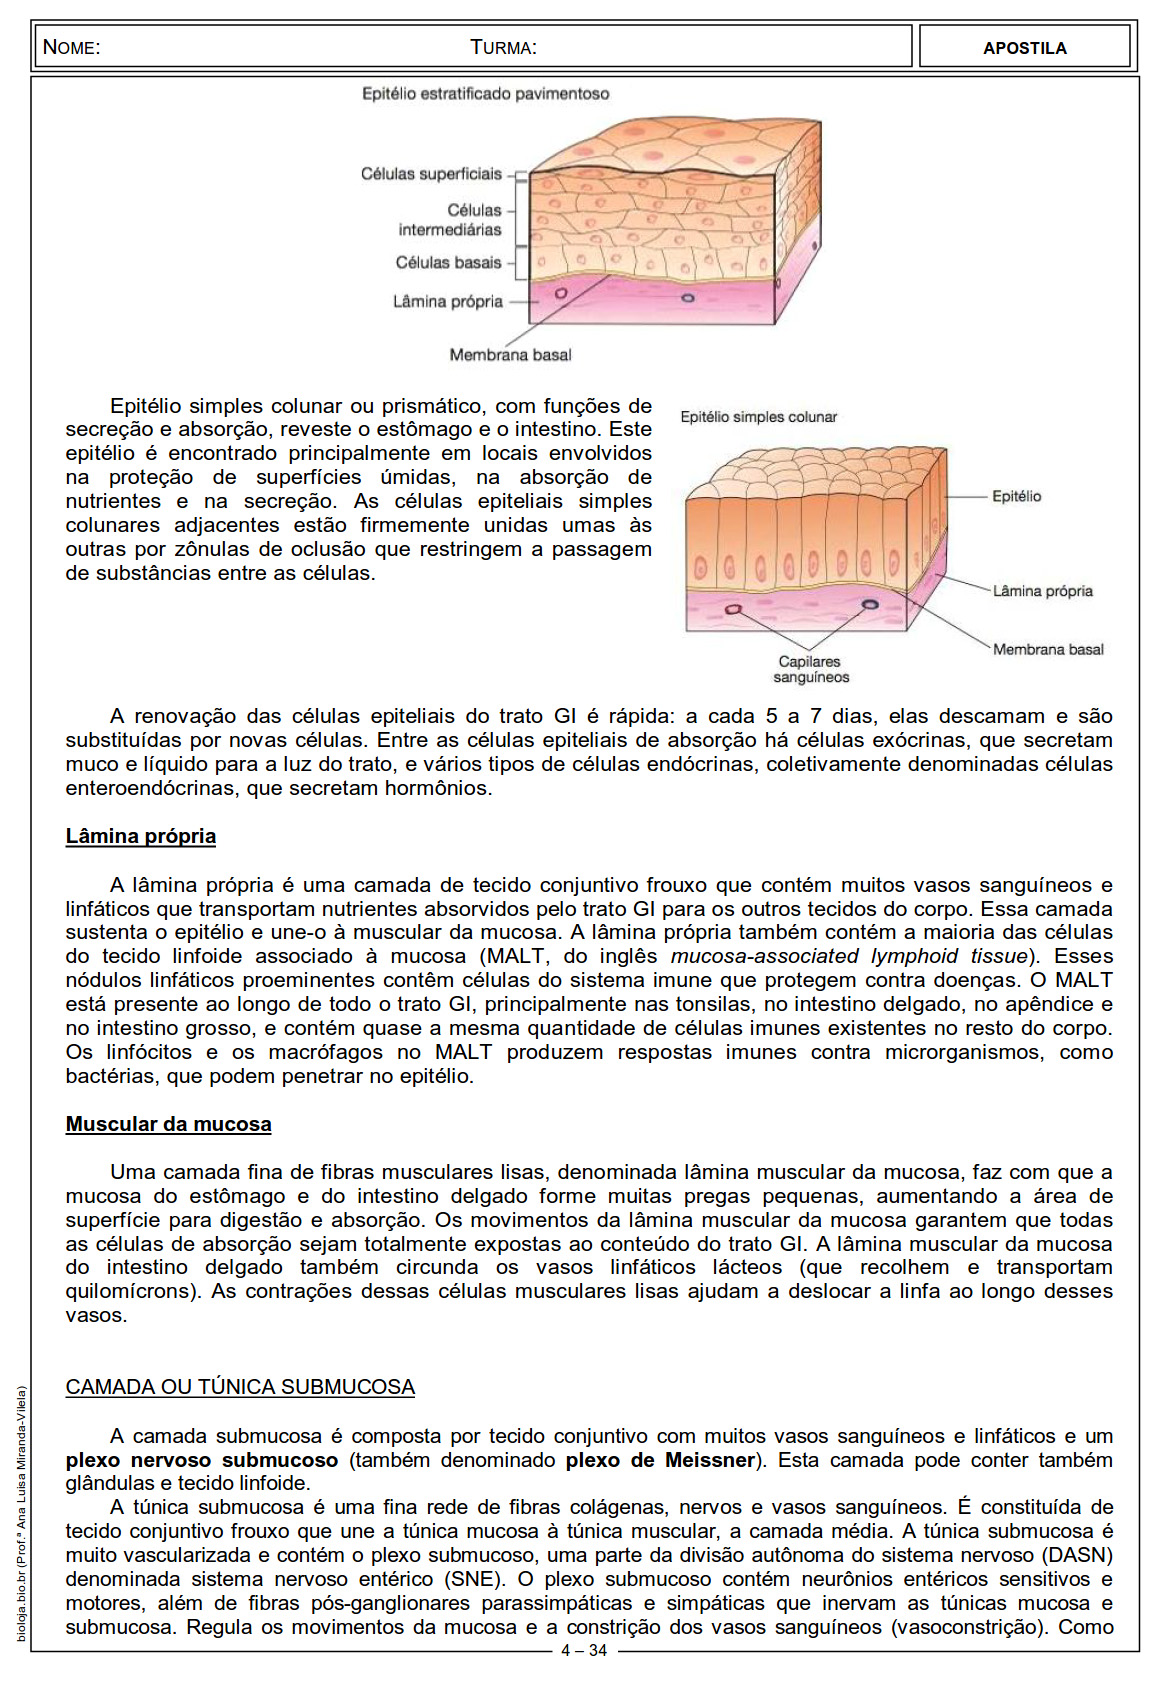 Apostila Fisiologia de órgãos e sistema IV: sistema digestório slide 4